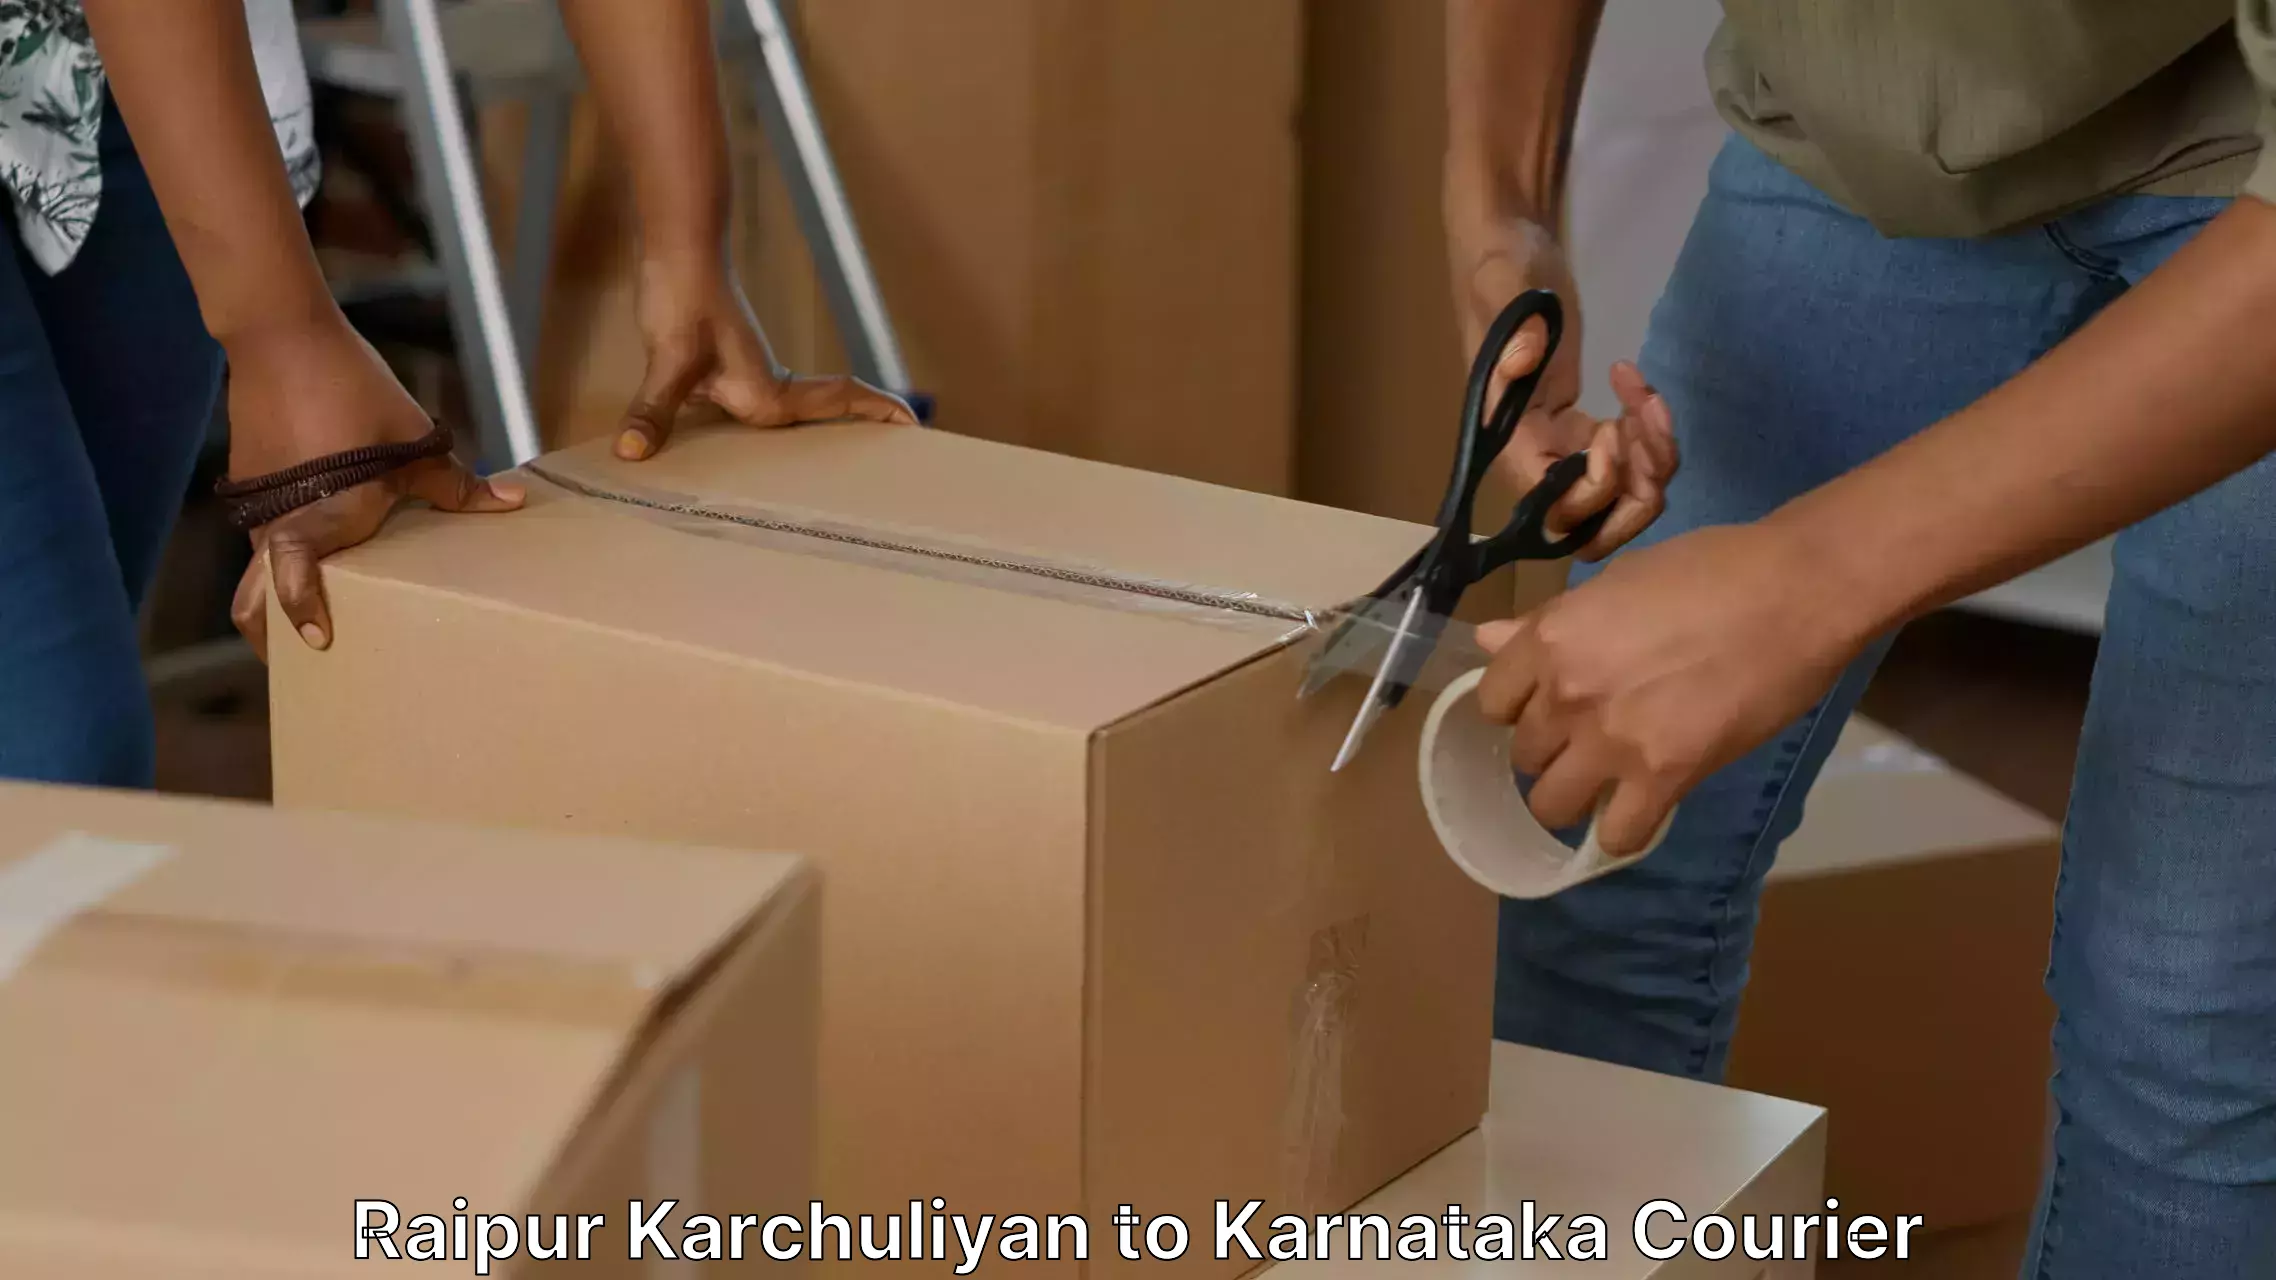 Customized furniture moving Raipur Karchuliyan to Karnataka